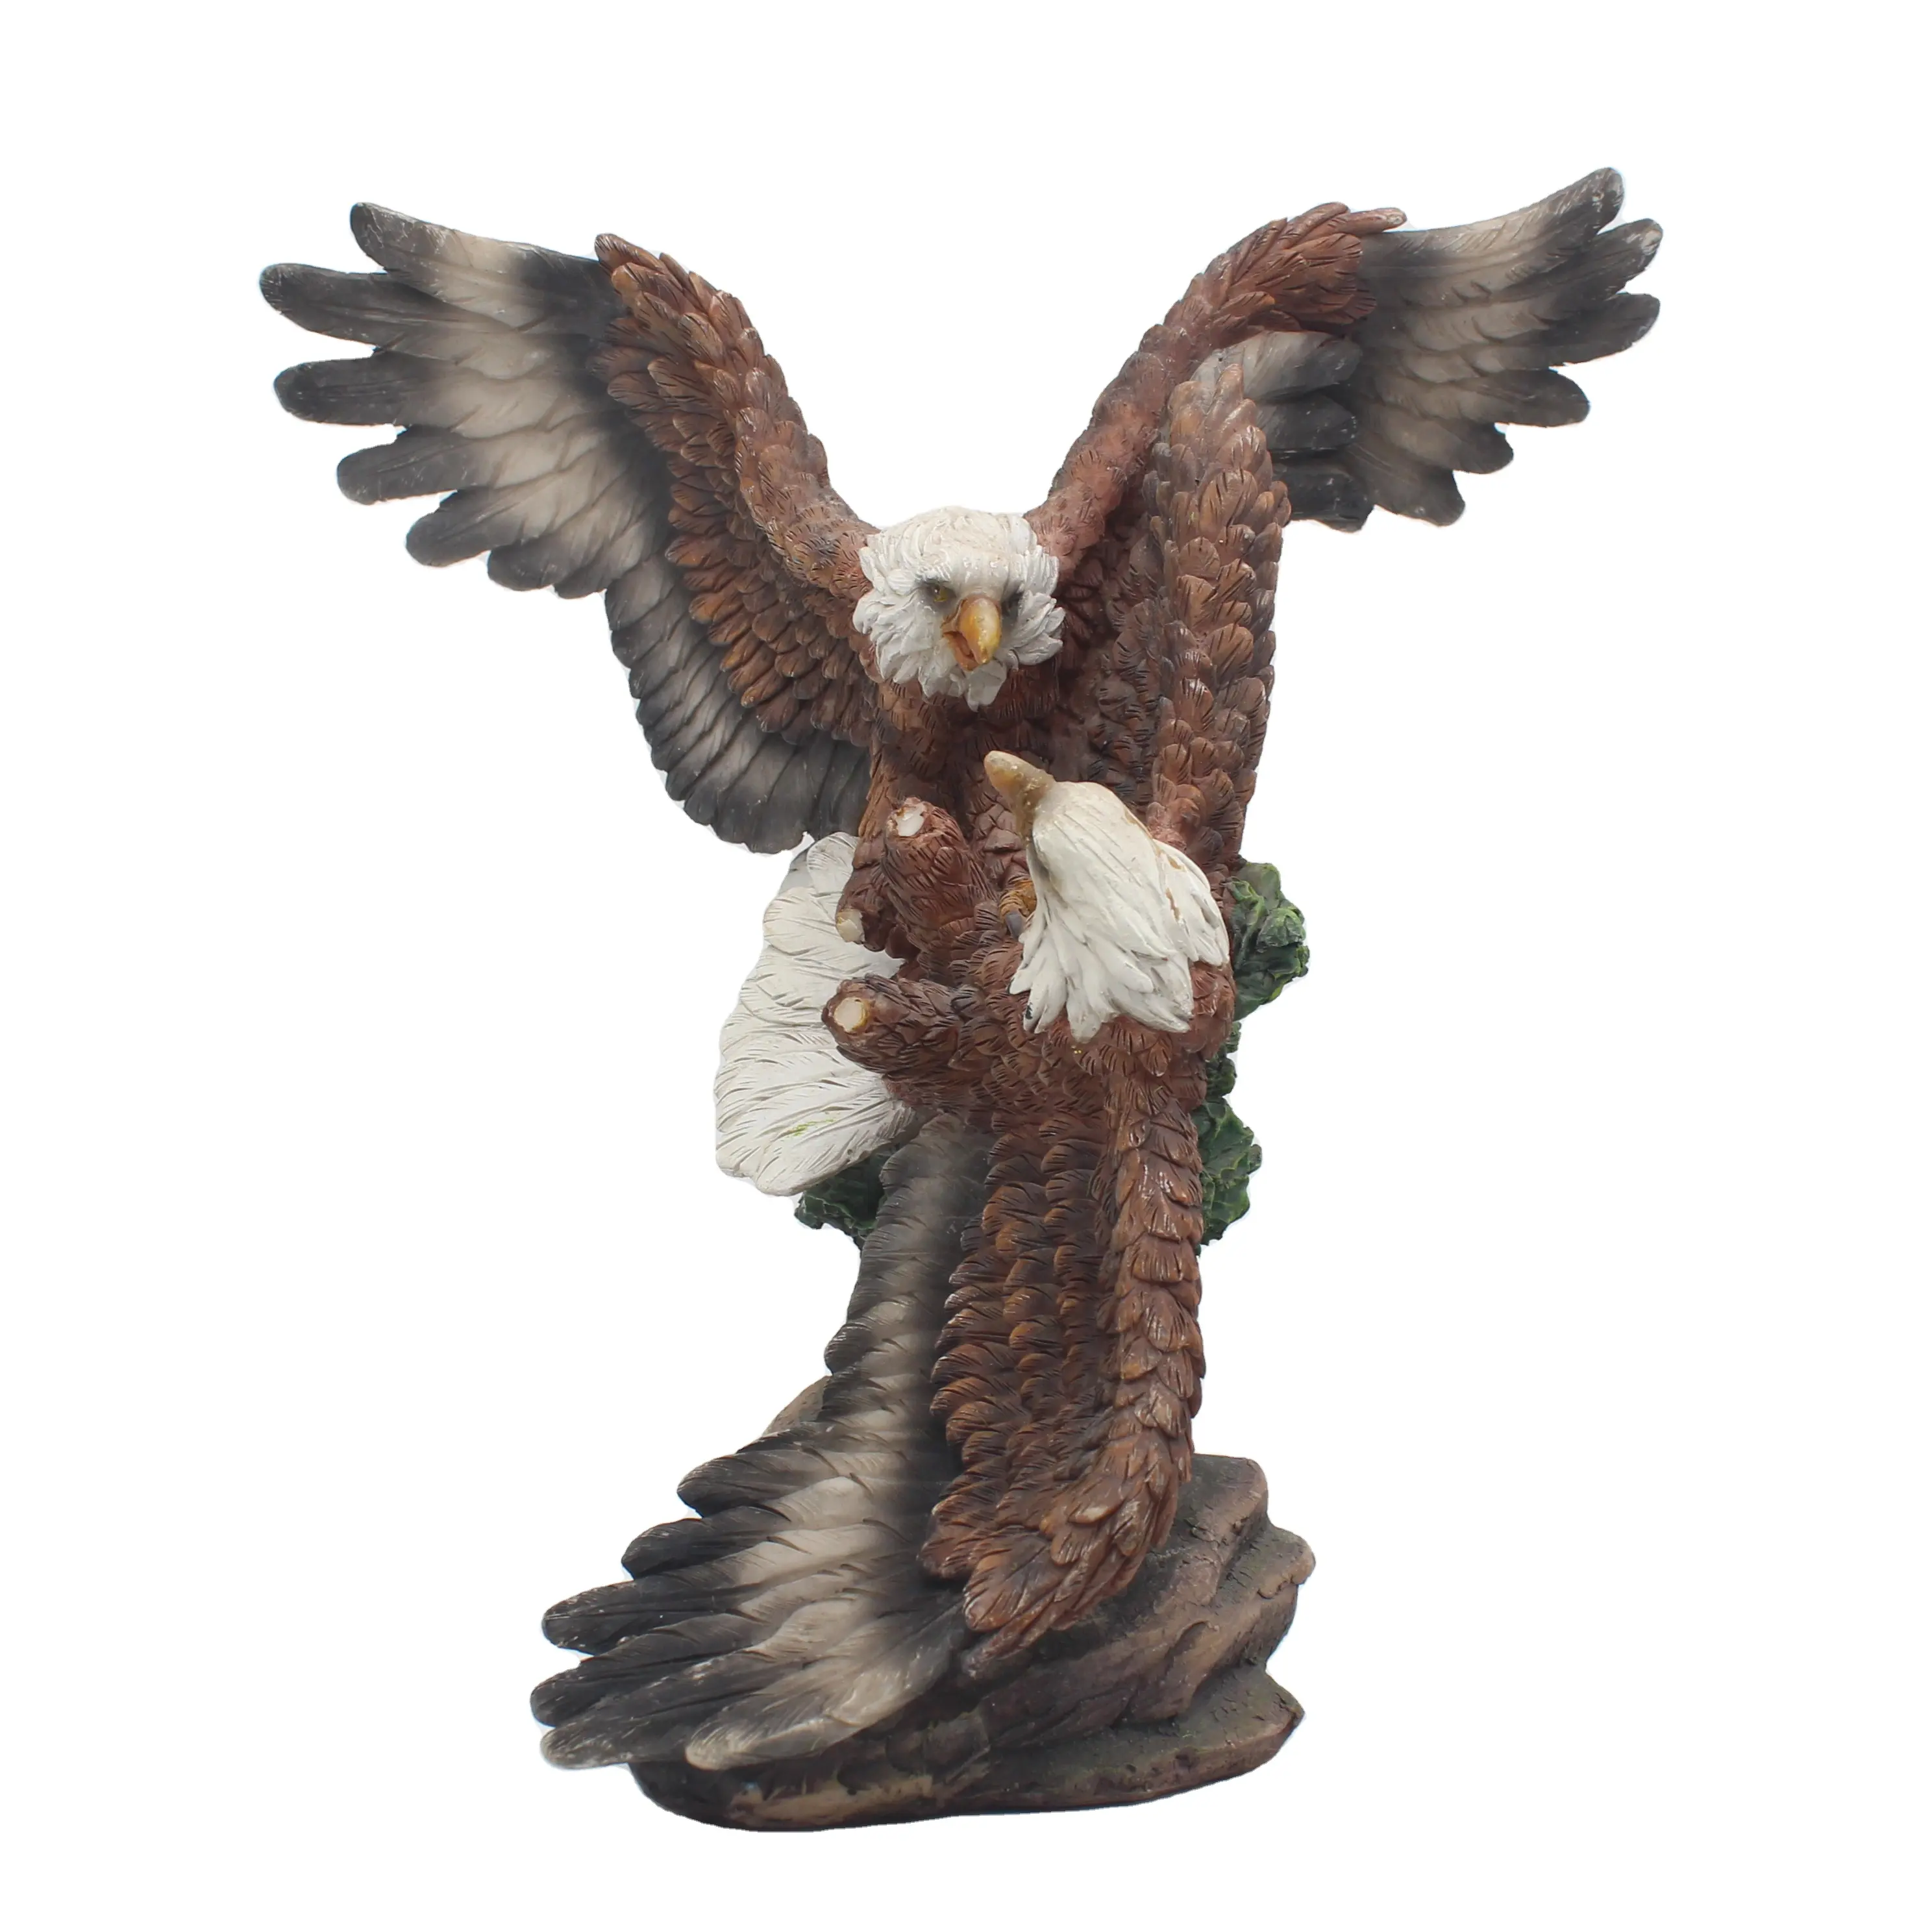 사용자 정의 수지 Ebros 날개 영광 대머리 독수리 동상 야생 동물 독수리 입상 기본 동물 조류 영광 미국 엠블럼 자유